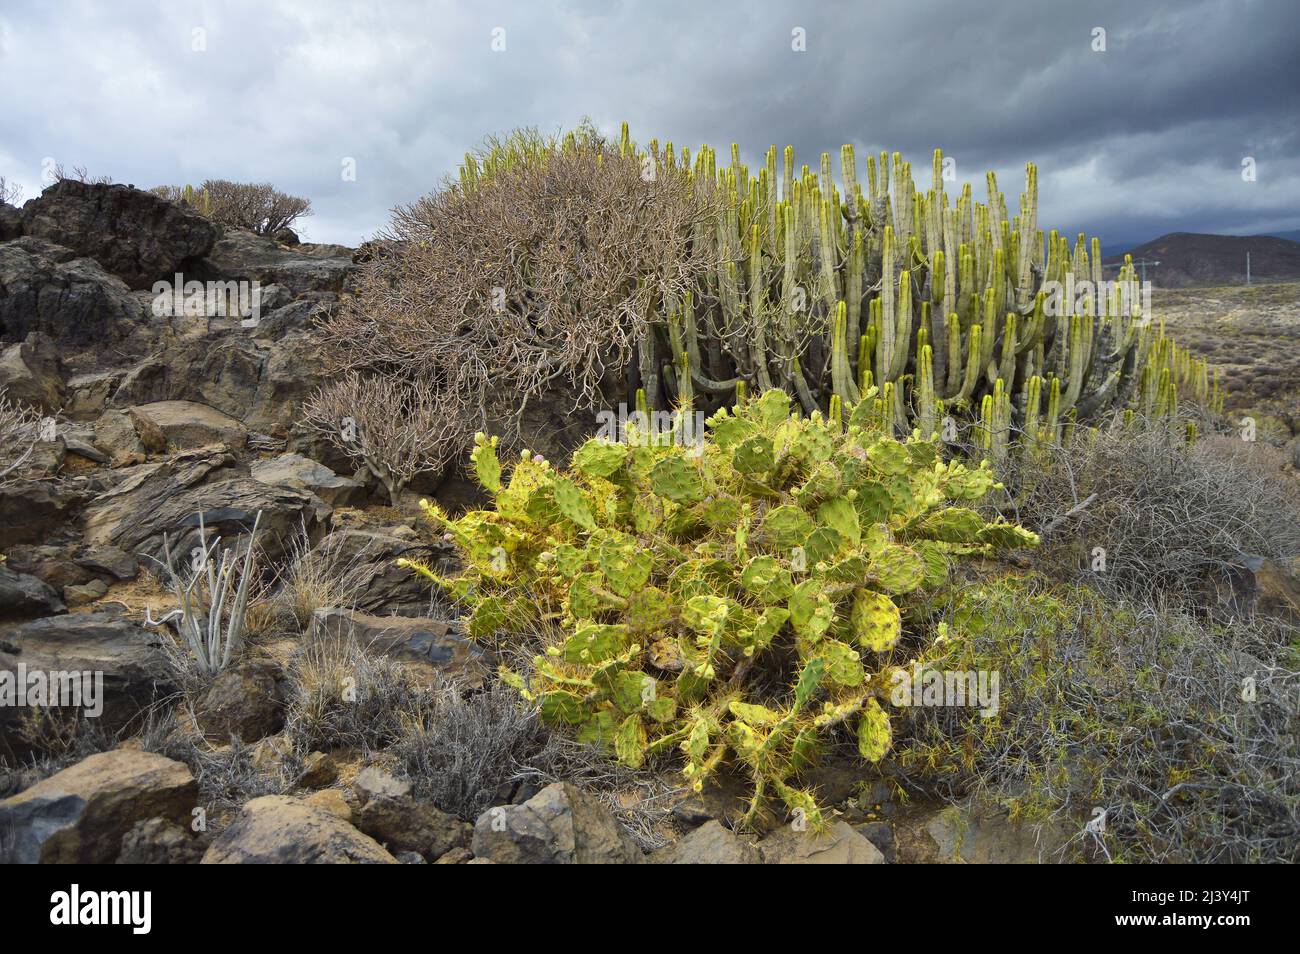 Opuntia dillenii (Prickly Pero) ed Euphorbia canariensis (Canary Island Spurge) che crescono nell'arido paesaggio vulcanico di Tenerife sud. Foto Stock